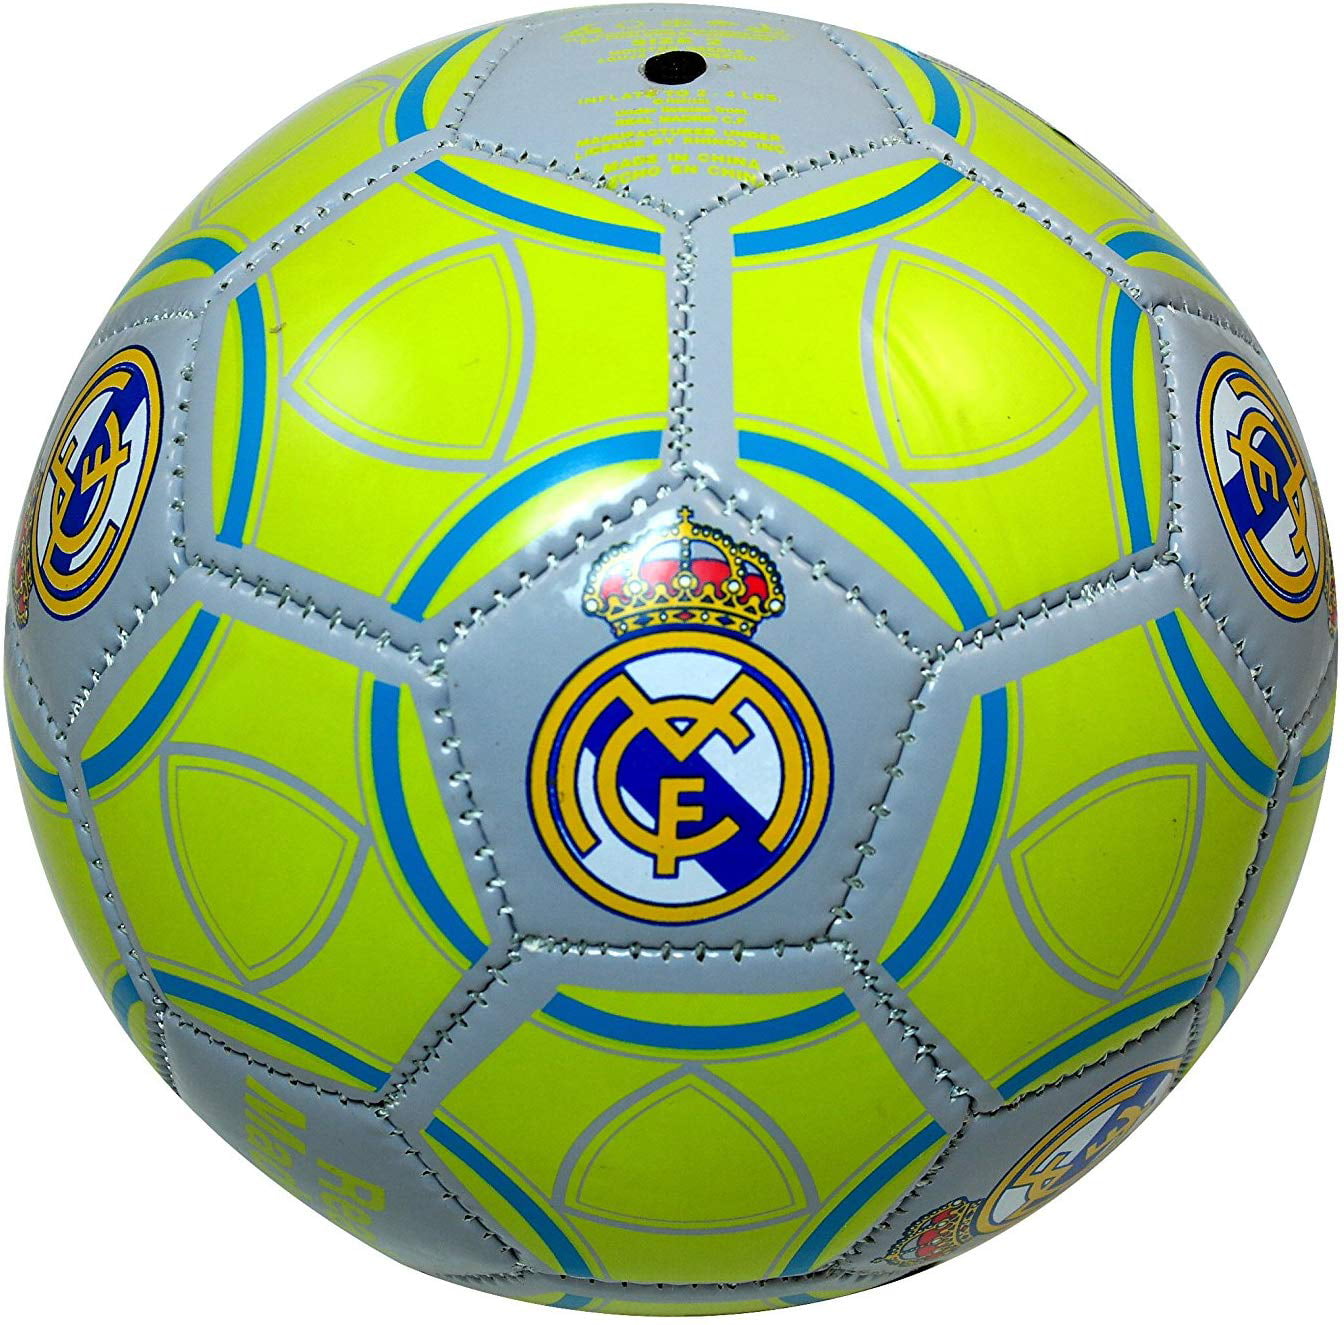 Licensed Brand New Manchester City F.C Soccer Ball #5 Hologram. Full Size 